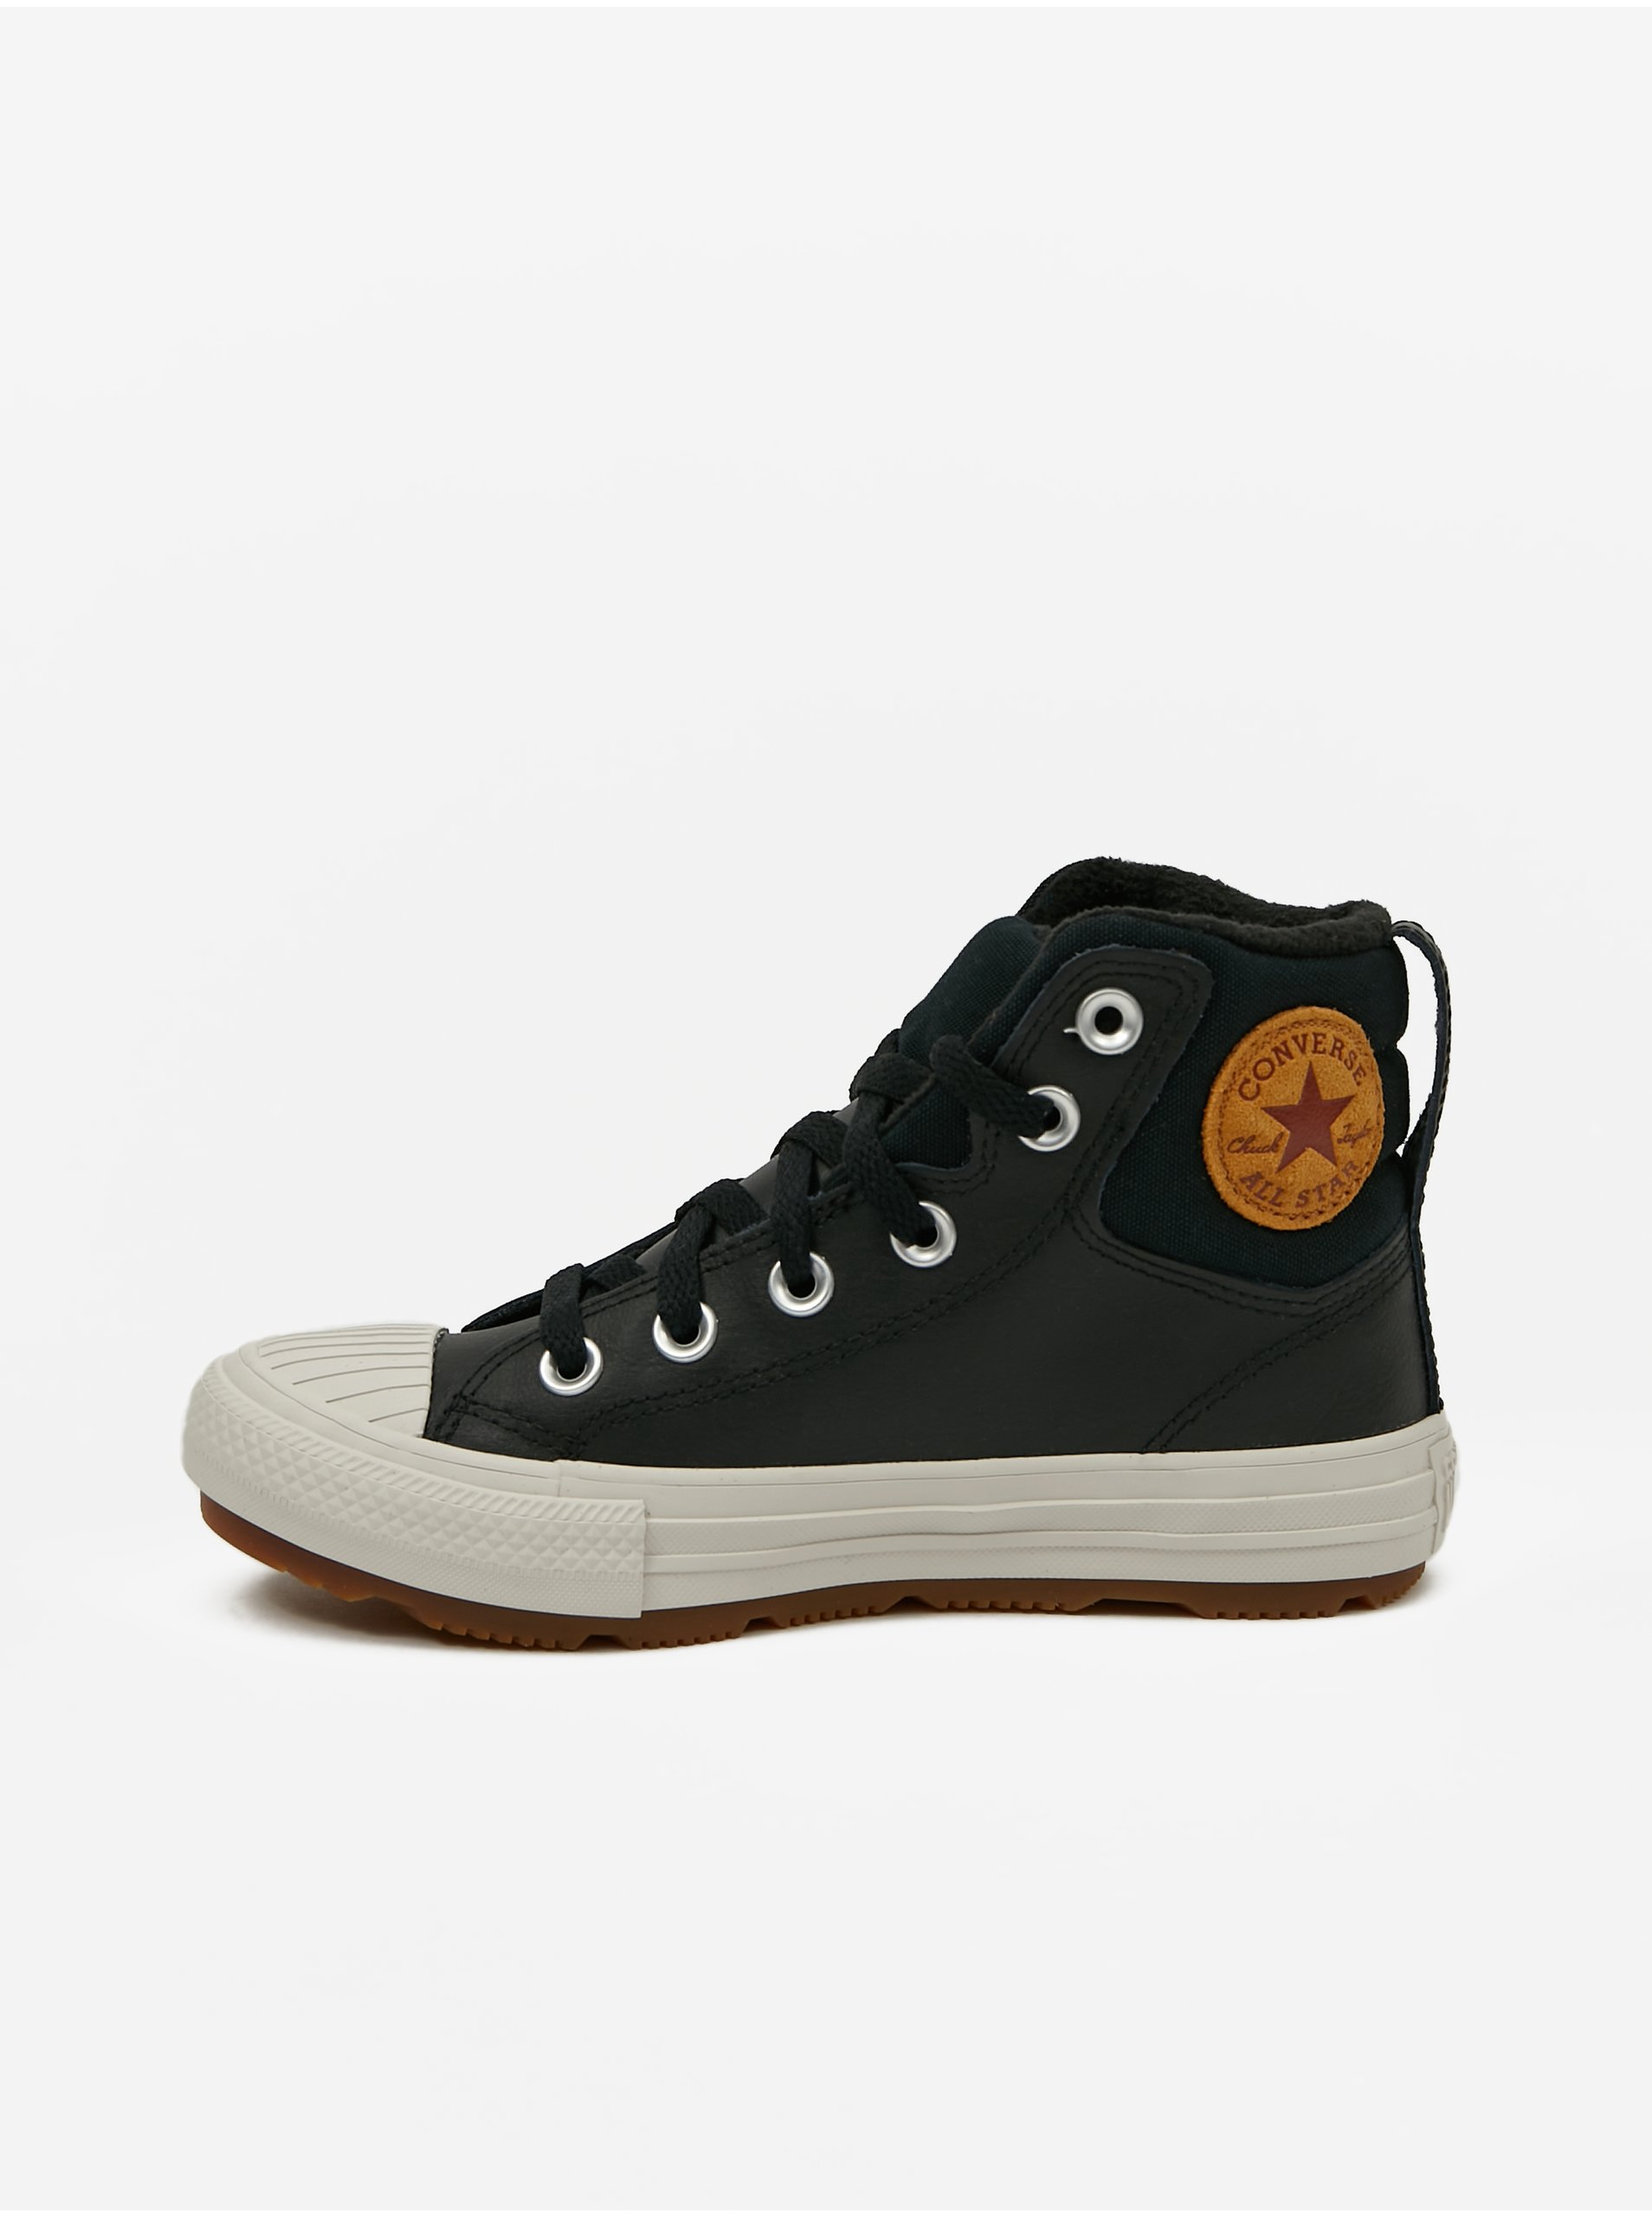 E-shop Černé klučičí kotníkové kožené tenisky Converse Chuck Taylor All Star Berkshire Boot Leather